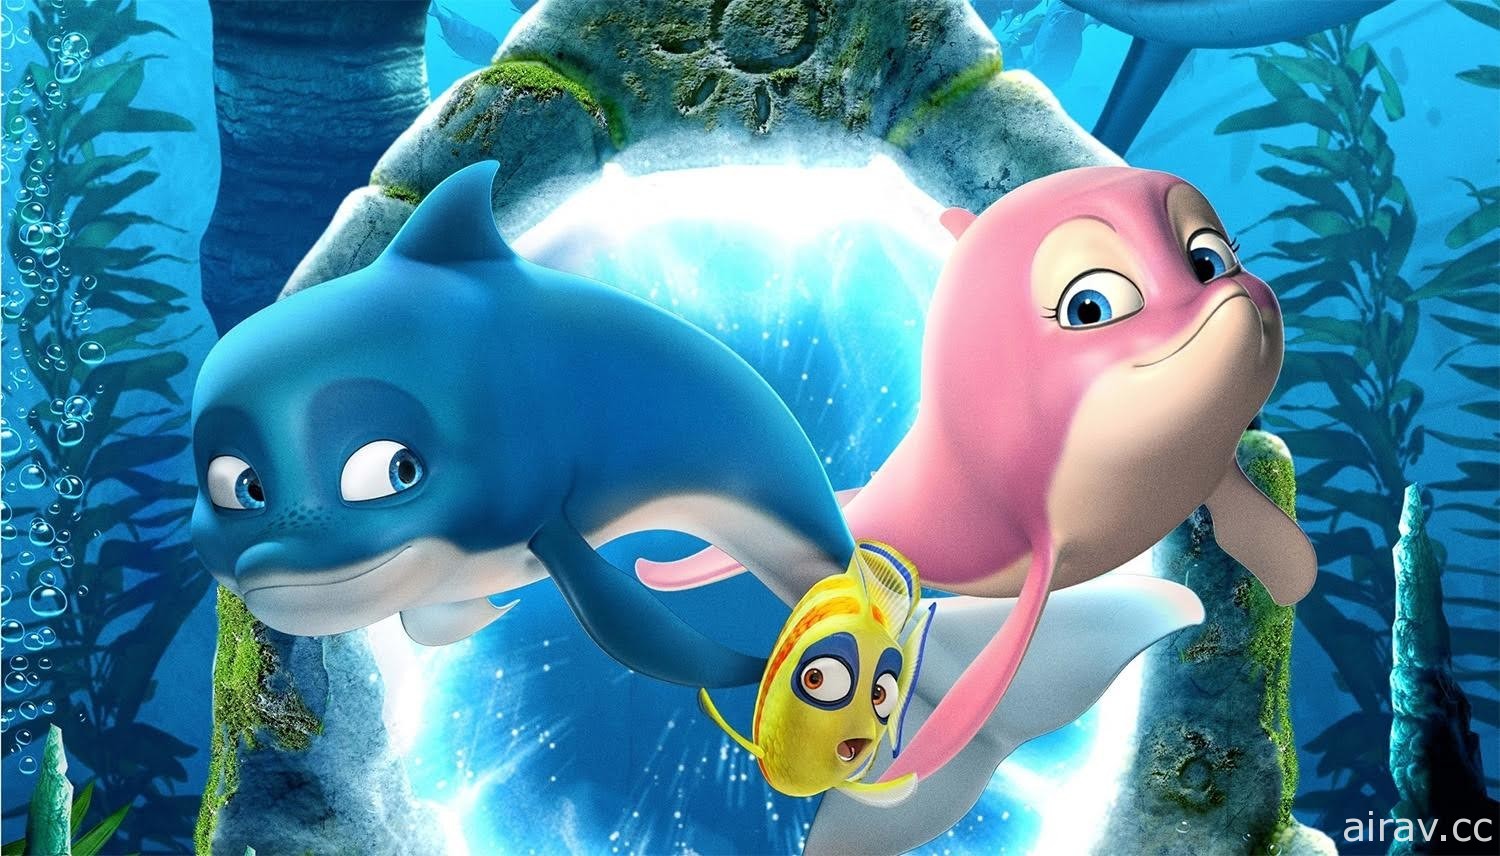 高雄電影節公布「孩子幻想國」單元片單《嚕嚕米》《海豚總動員》等動畫上映